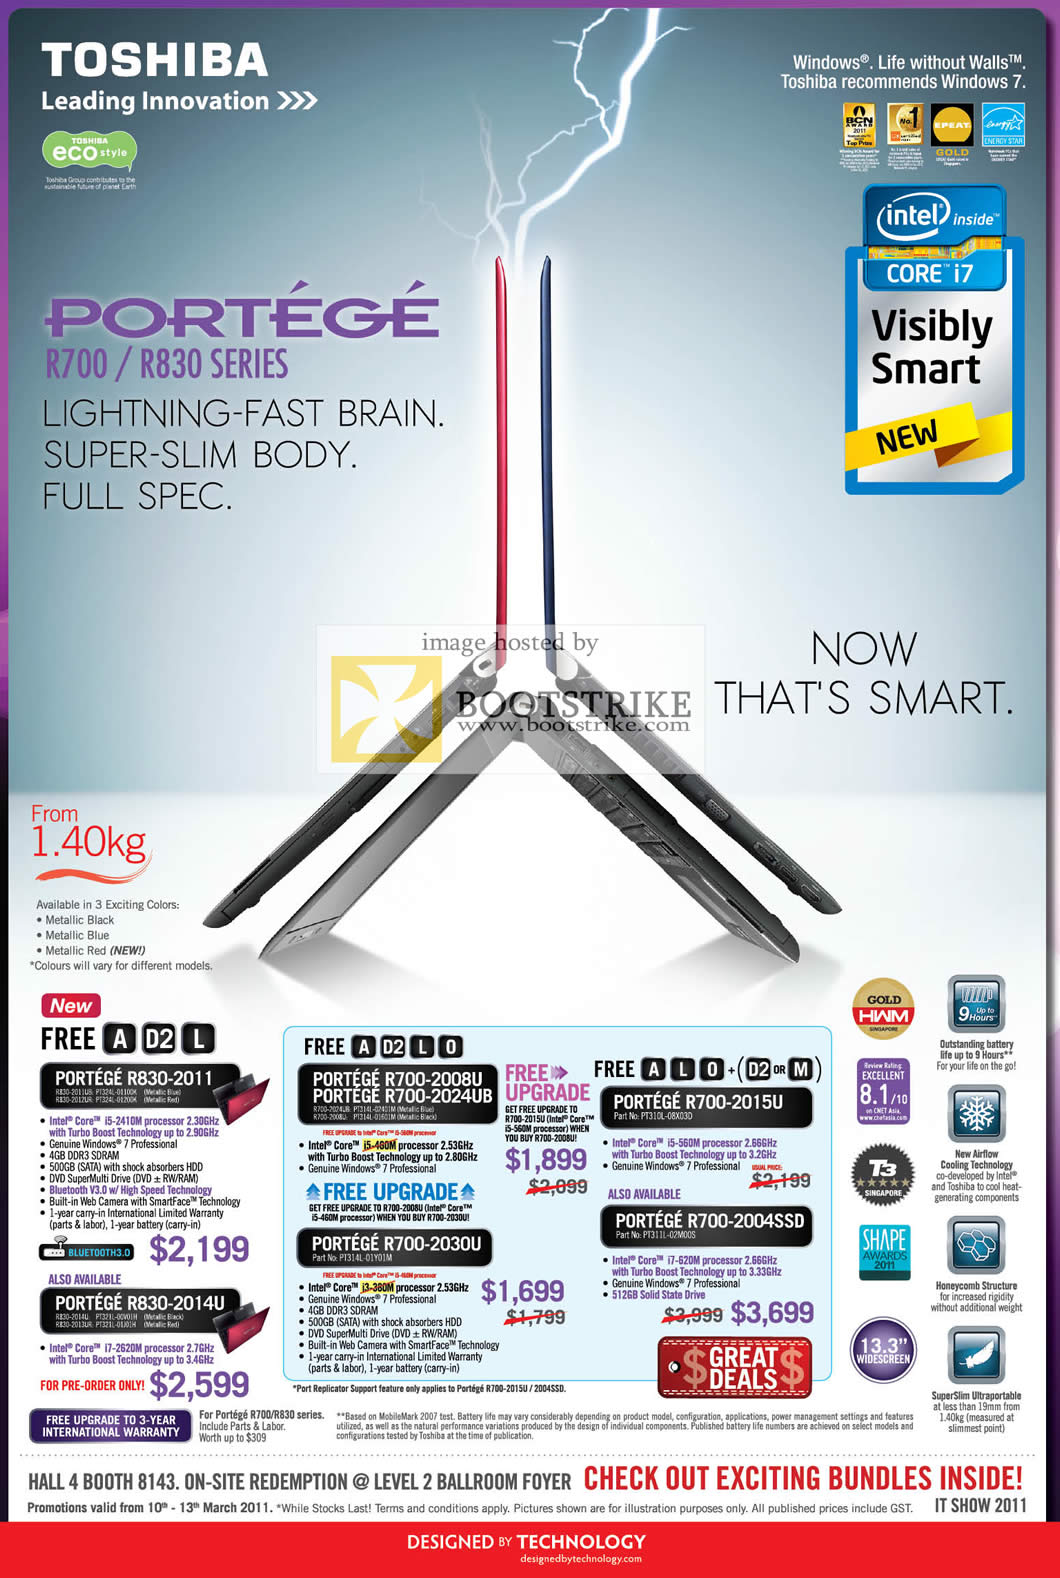 IT Show 2011 price list image brochure of Toshiba Notebooks Portege R830 2011 2014U R700 2008U 2024UB 2030U 2015U 2004SSD